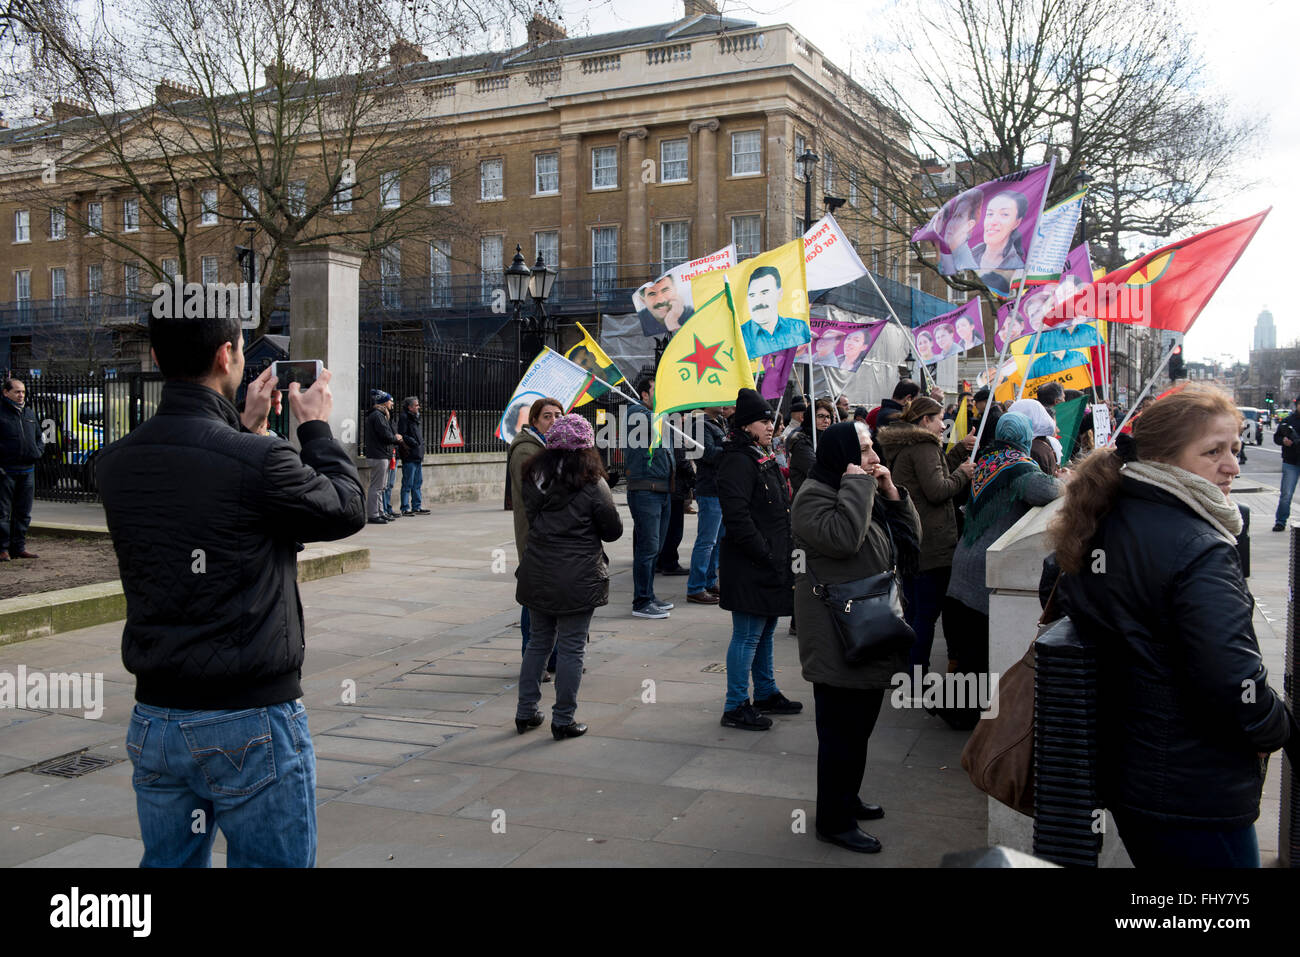 Manifestant est à prendre des photos avec le téléphone de ses amis pendant la manifestation kurde à l'extérieur de la Downing Street, London, UK. Banque D'Images